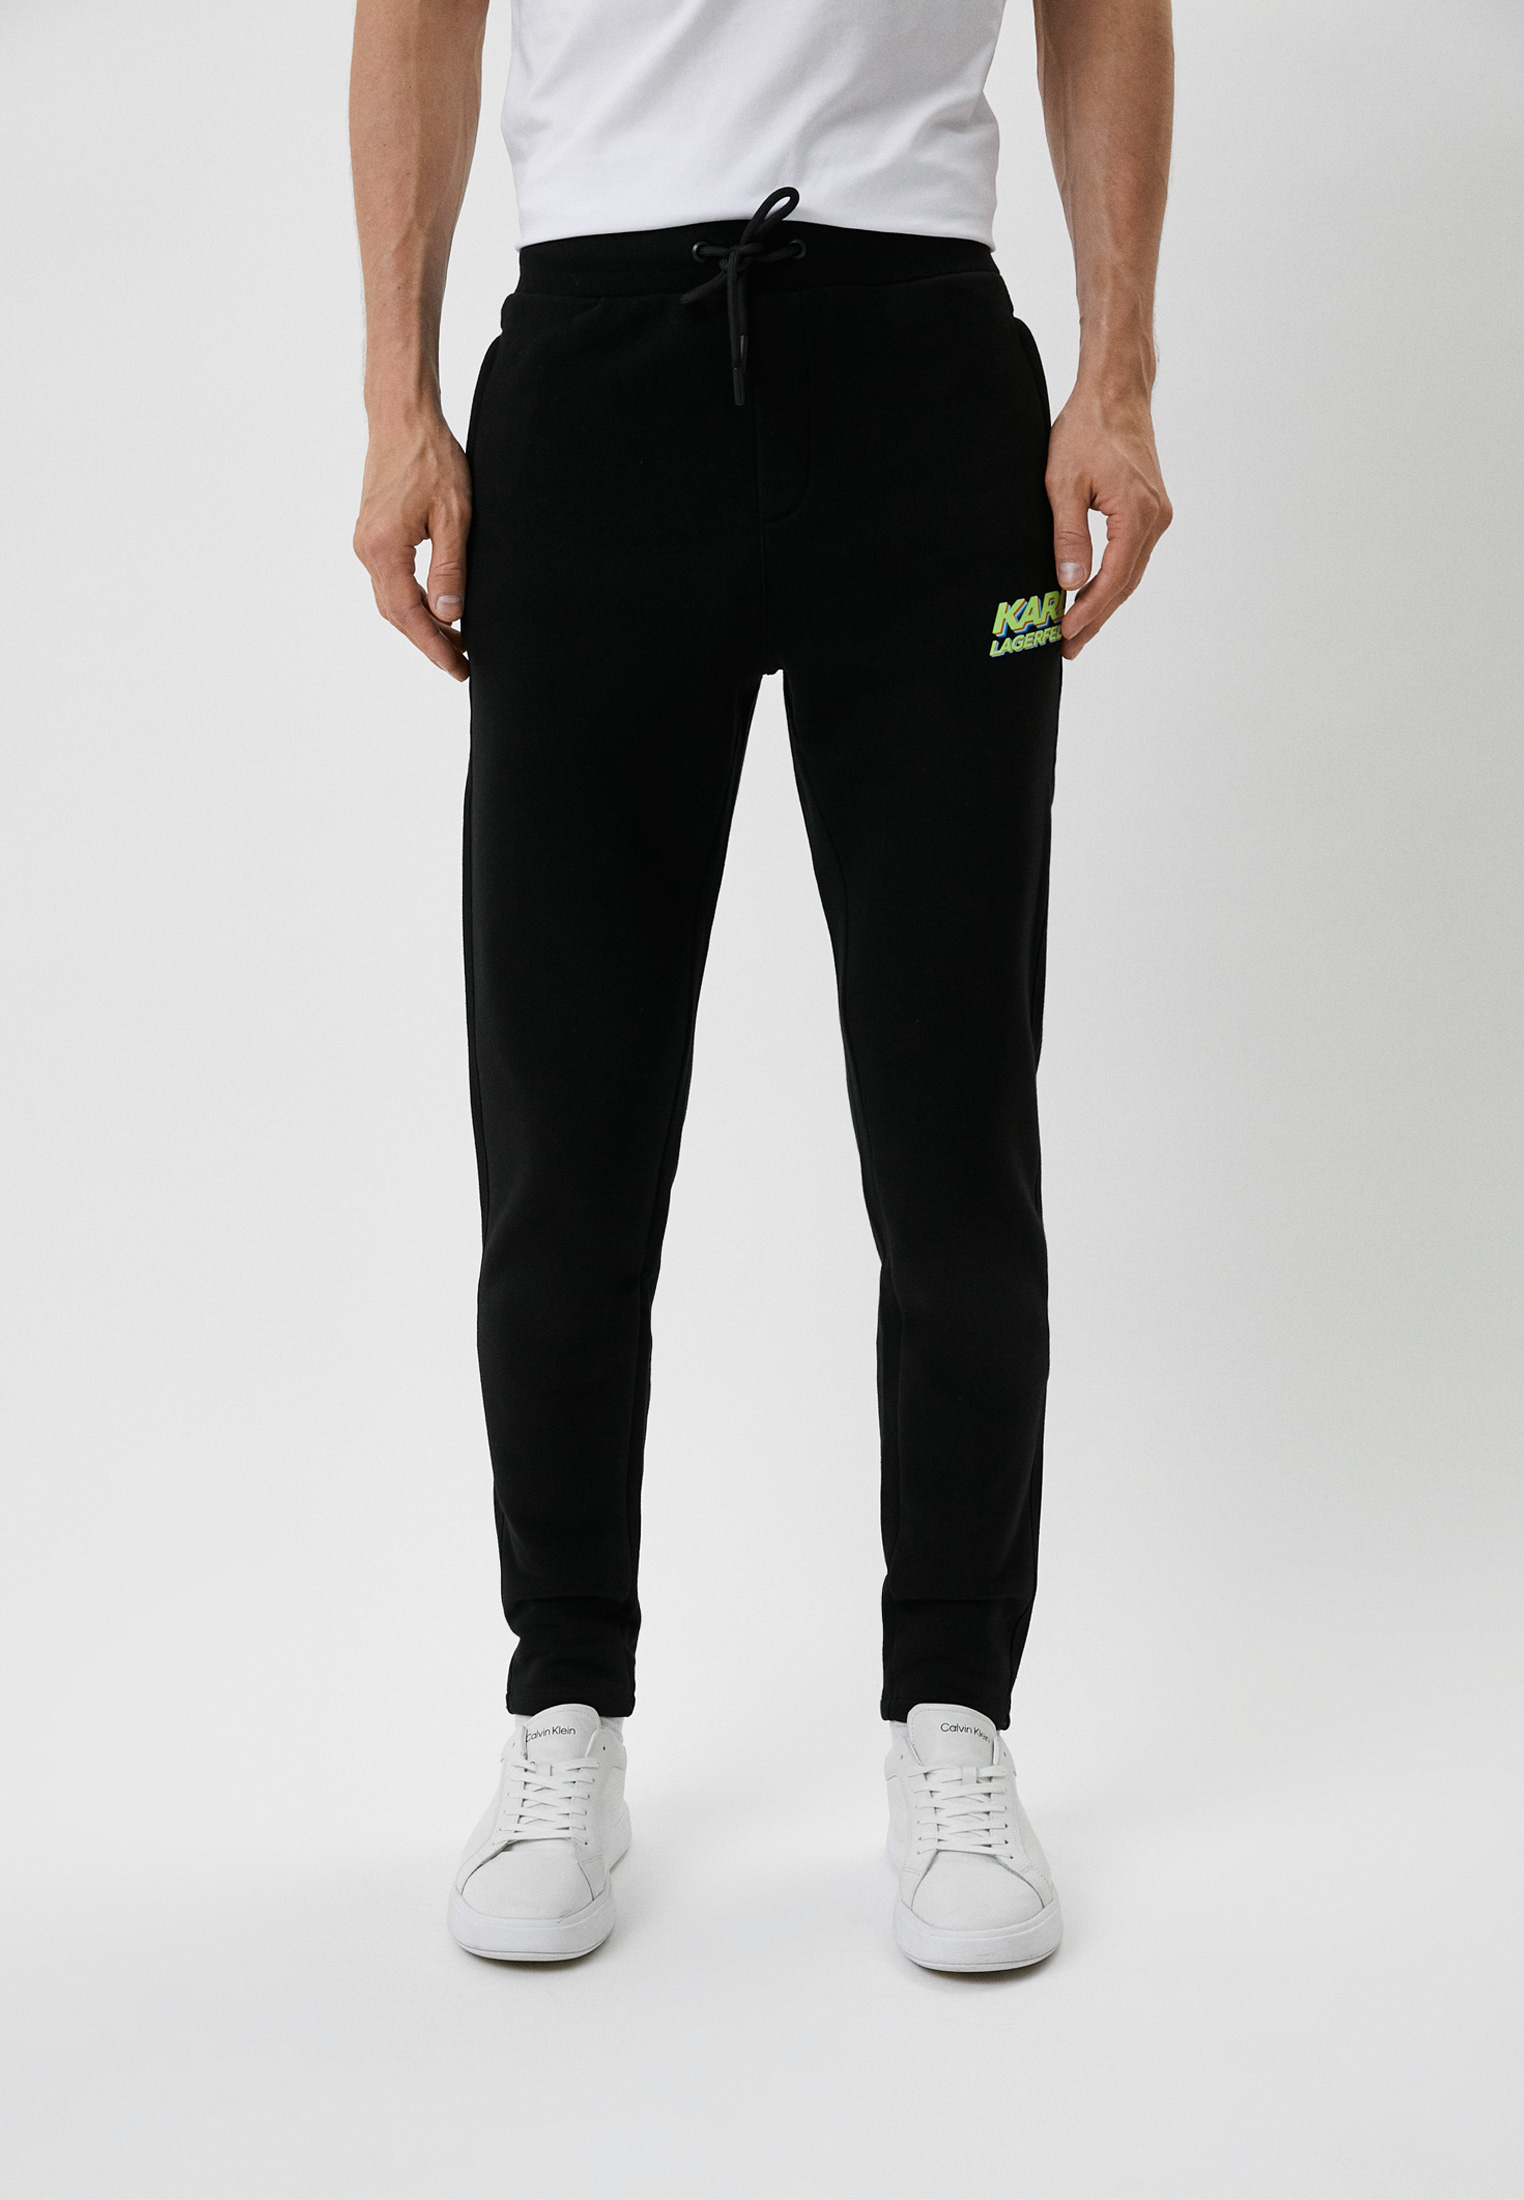 Мужские спортивные брюки Karl Lagerfeld 705081-523910: изображение 1